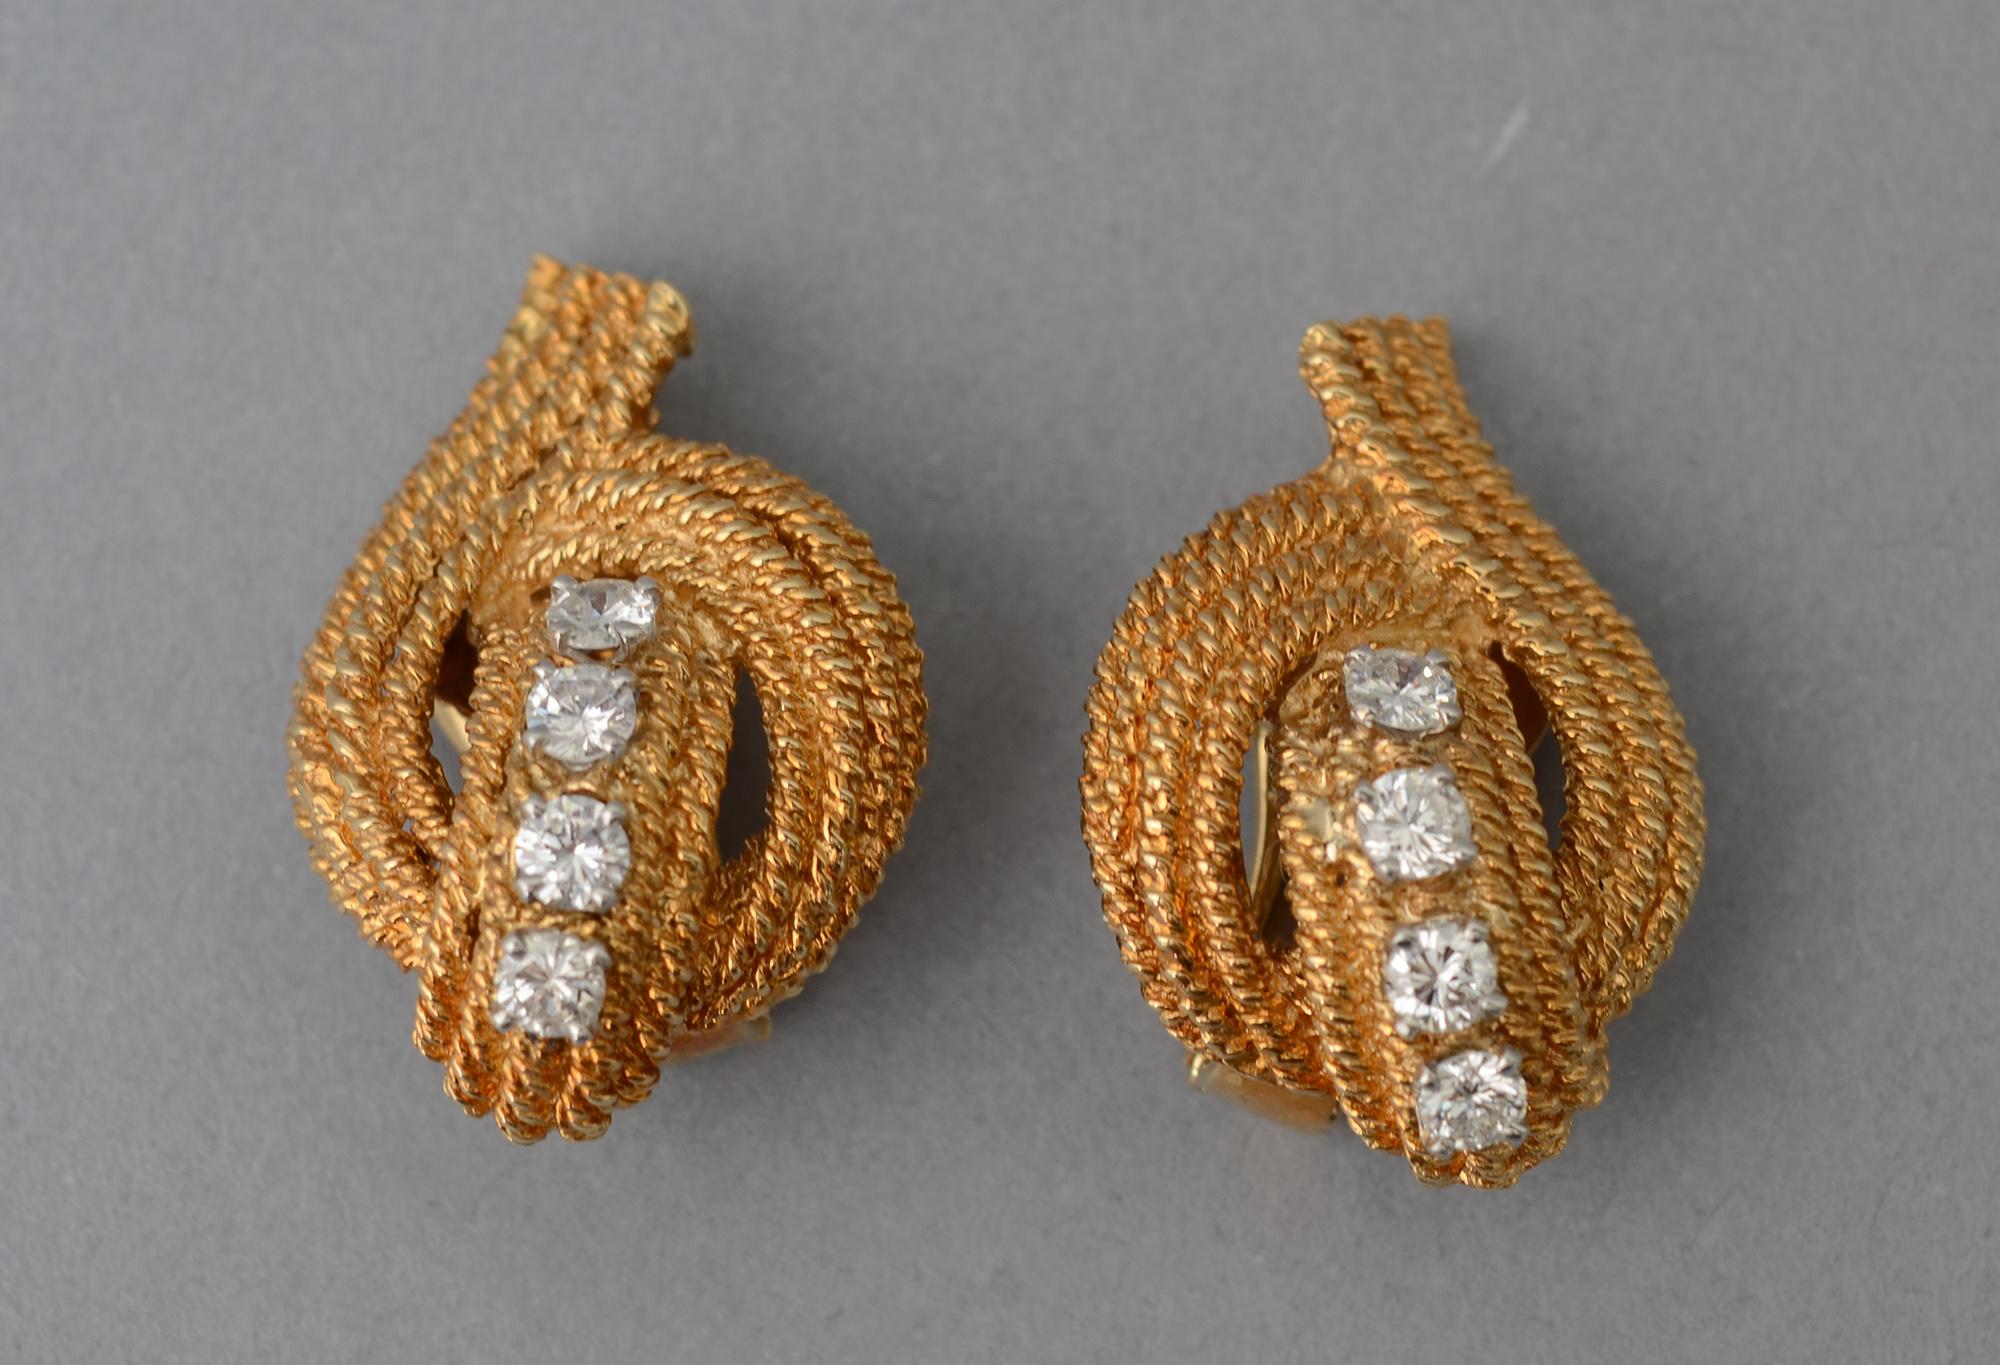 Elegante Ohrclips aus Gold und Diamanten von David Webb. Jeder Ohrring hat 4 Diamanten mit einem Gesamtgewicht von etwa 1,25 Karat. Sie sind umgeben von drei Reihen aus gedrehtem Gold in einem anmutigen, erhebenden  Design.
Clip-Rückwände können in